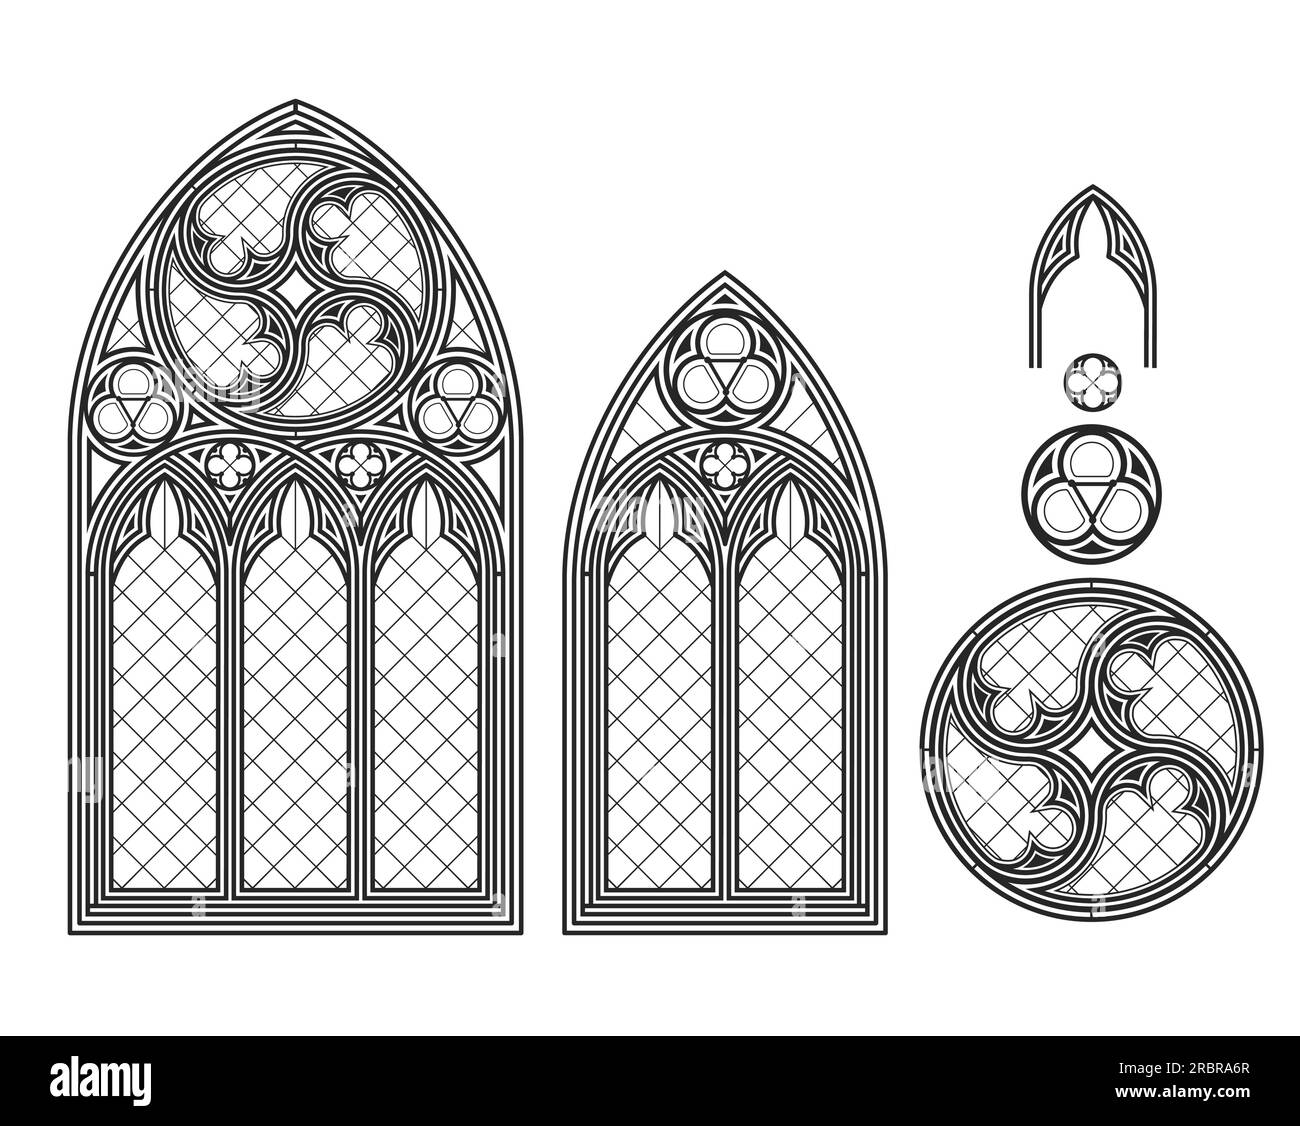 Realistica vetrata medievale gotica. Sfondo o texture. Elemento architettonico. Finestra medievale della cattedrale di vetro colorato in stile gotico Illustrazione Vettoriale